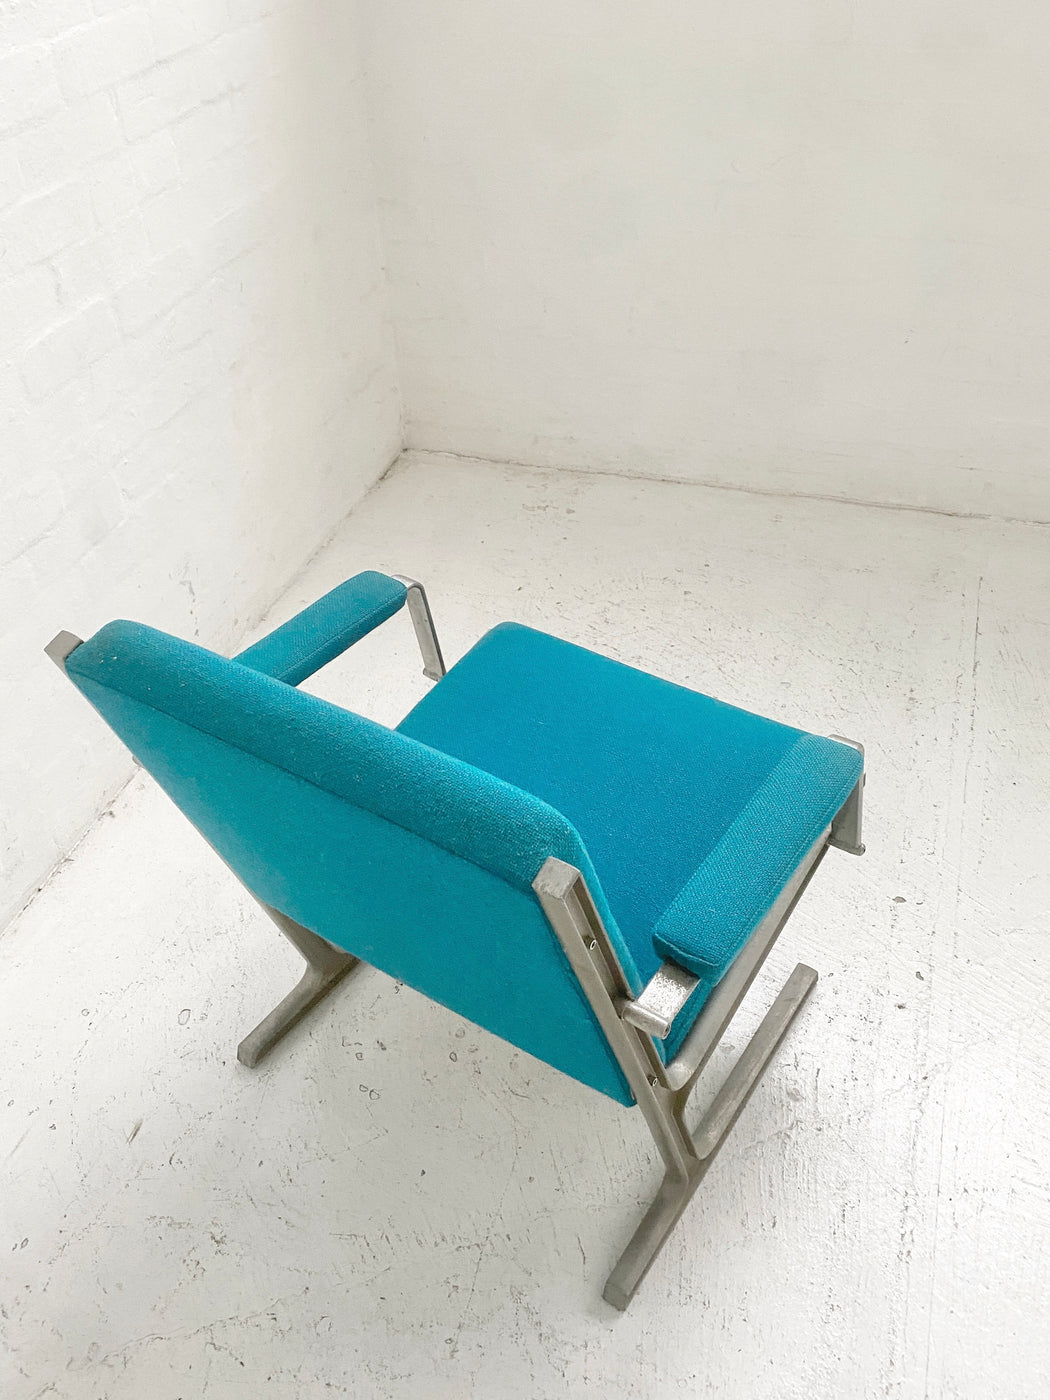 Ditte & Adrian Heath 'Lufthavns' Chair